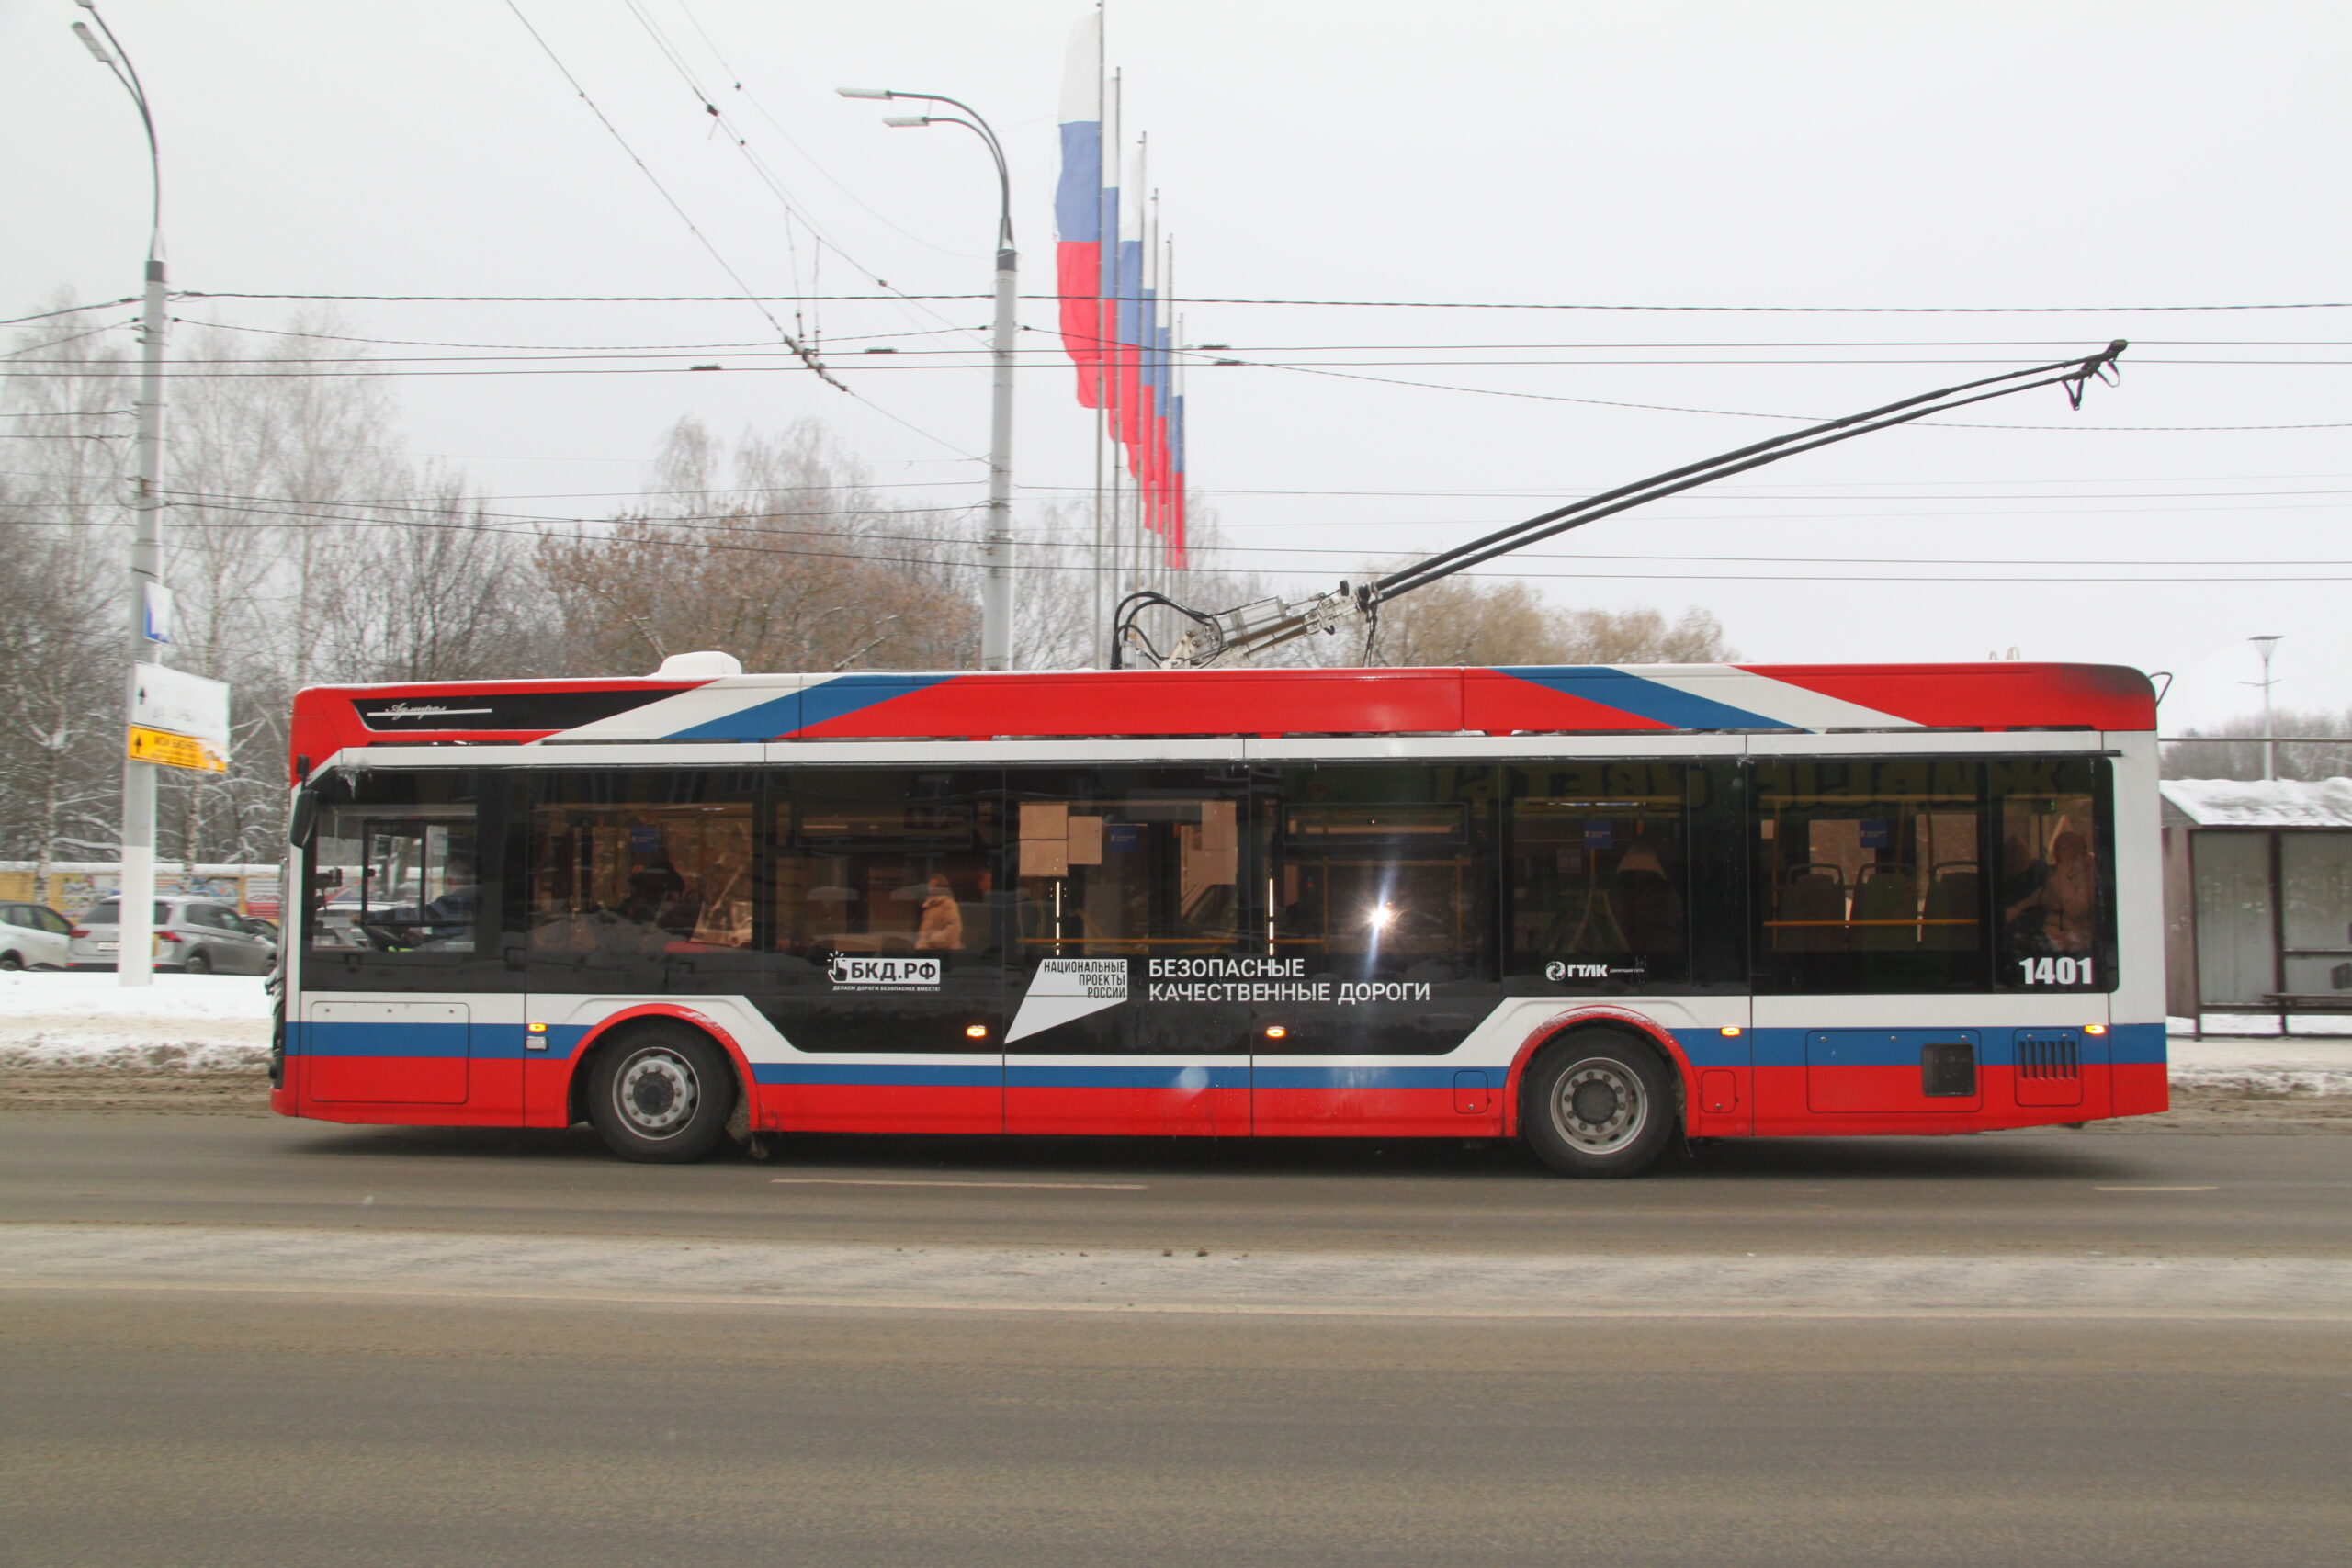 Жители Брянска оценили удобство и комфорт новых троллейбусов «Адмирал»